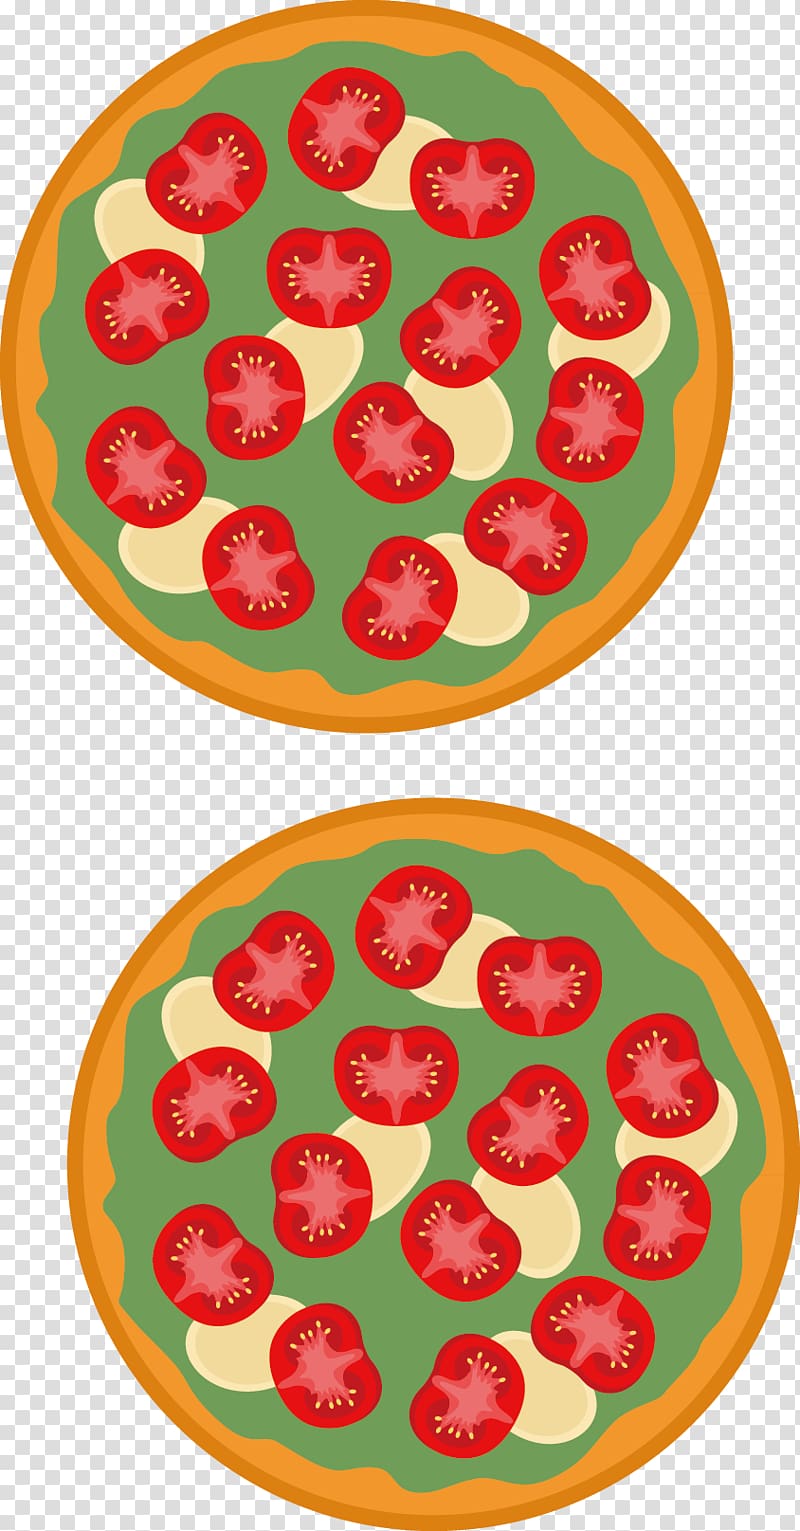 Pizza Hamburger La Cerollera Food Buffalo mozzarella, Pizza transparent background PNG clipart